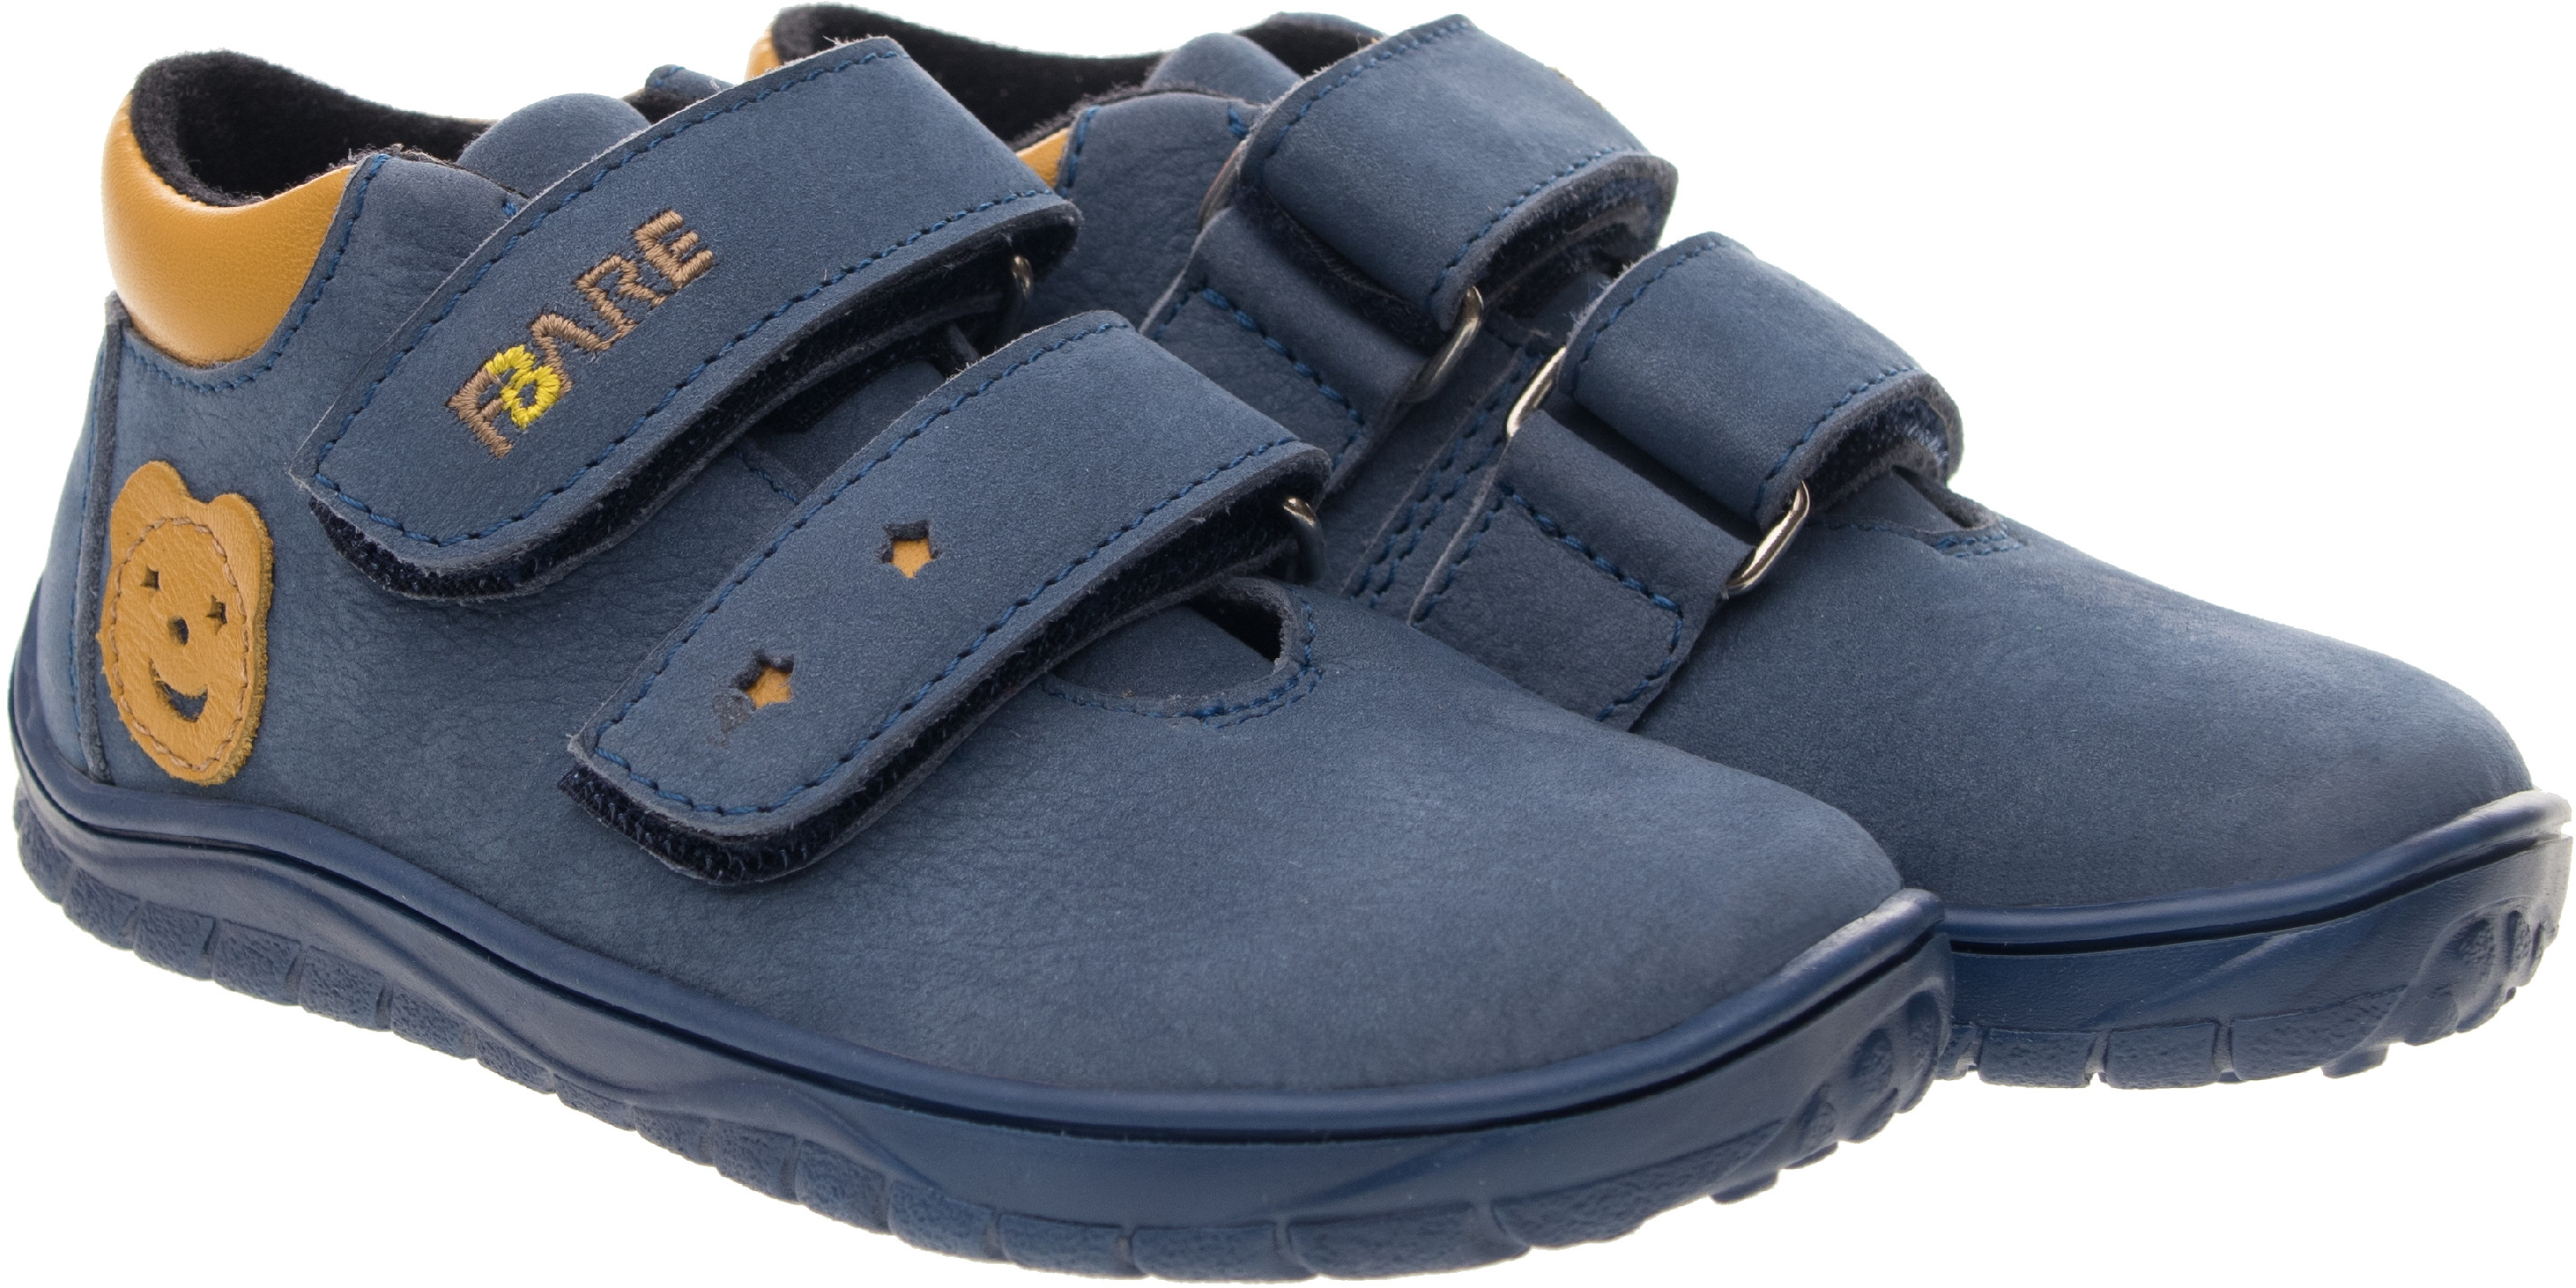 FARE BARE dětské nepromokavé celoroční boty B5426201 Velikost obuvi: 25